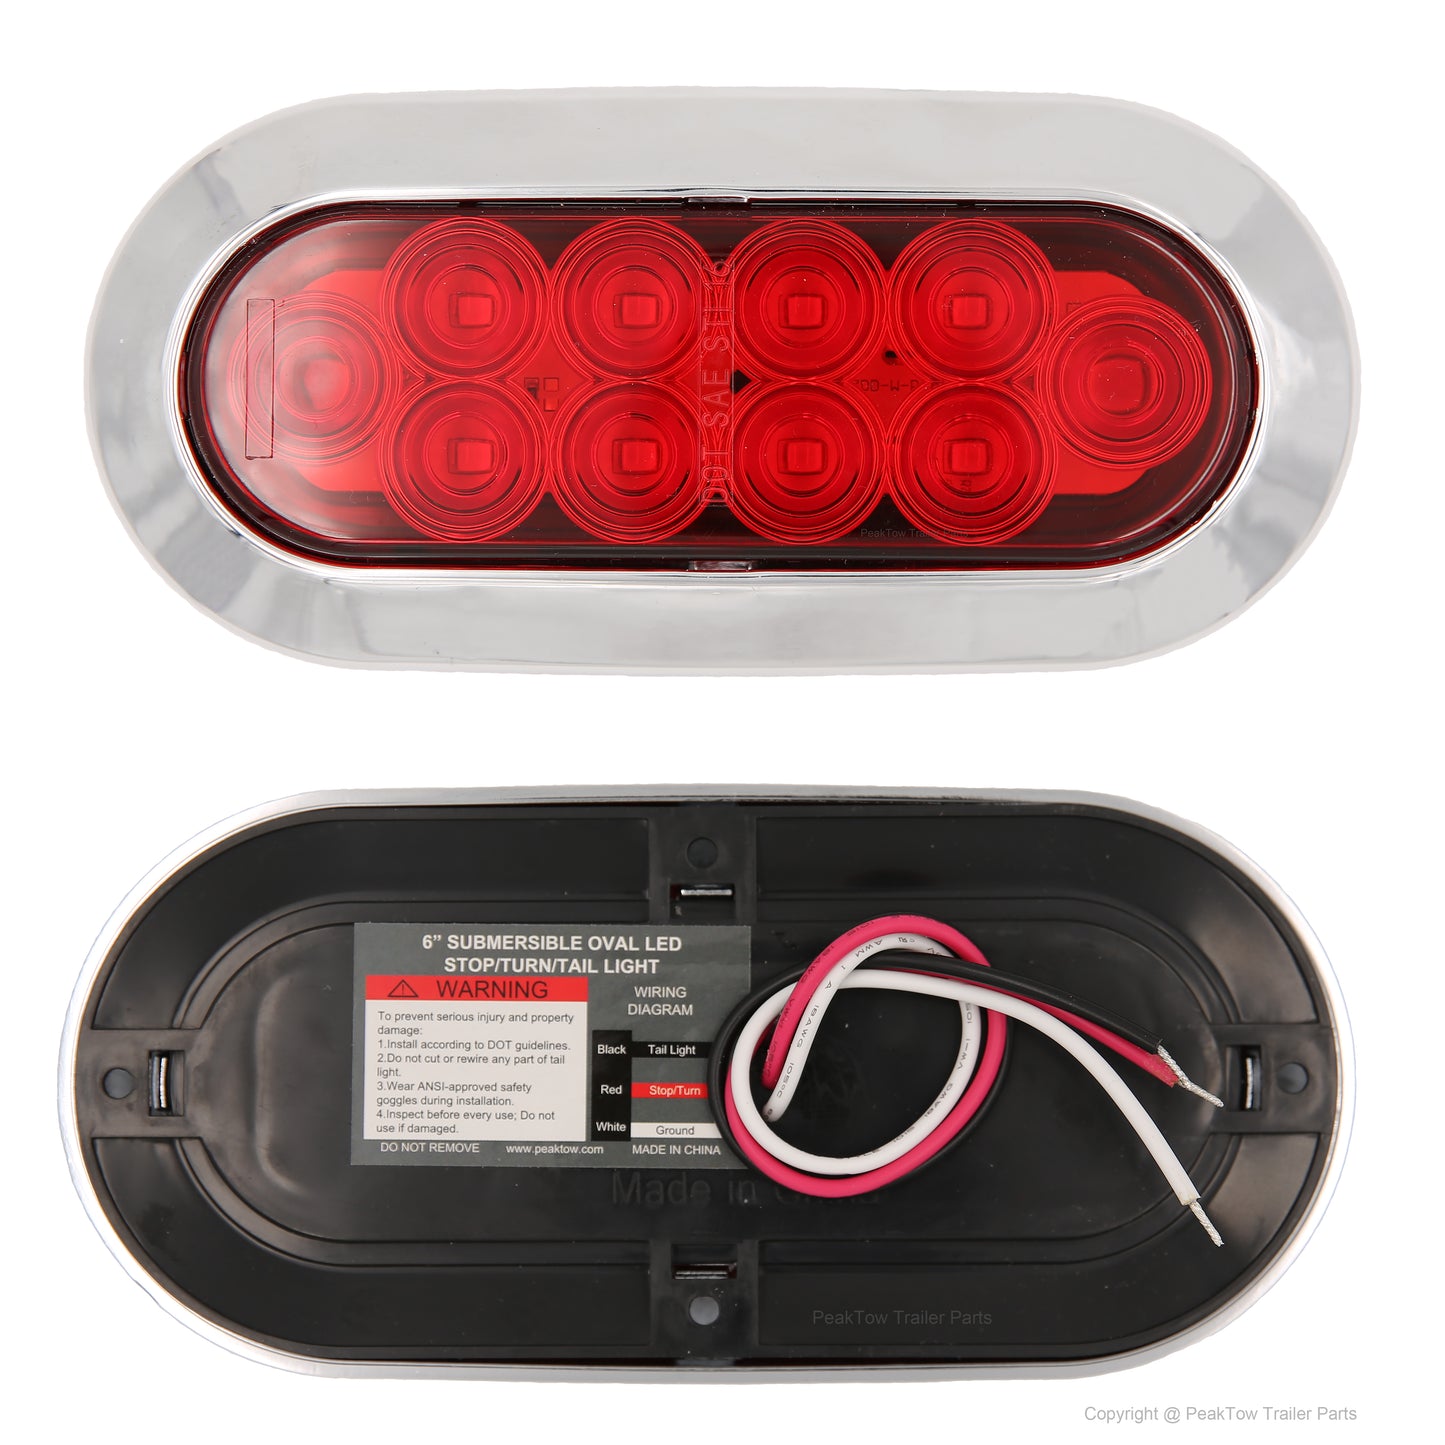 PTL0435 Ovale 6 pouces LED rouge submersible arrêt/virage/queue remorque camion RV lumières montage en surface - caisse de 80